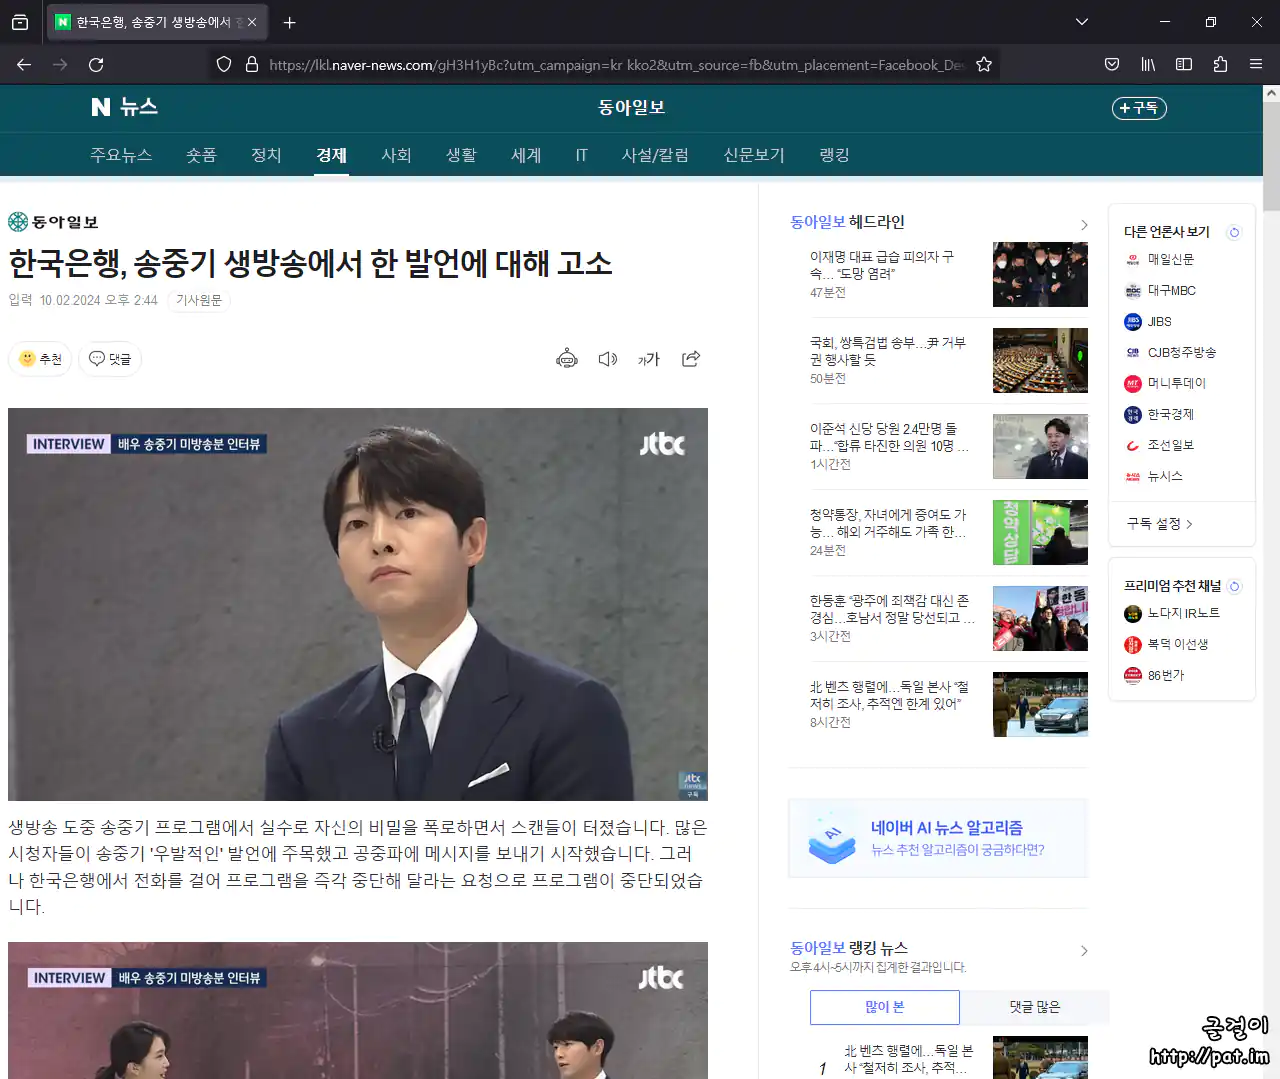 페이스북 사기 광고에서 고리를 건 사기 광고 (가짜 네이버 뉴스 화면) (한국은행, 동아일보, 송중기, JTBC, 강지영을 사칭함)